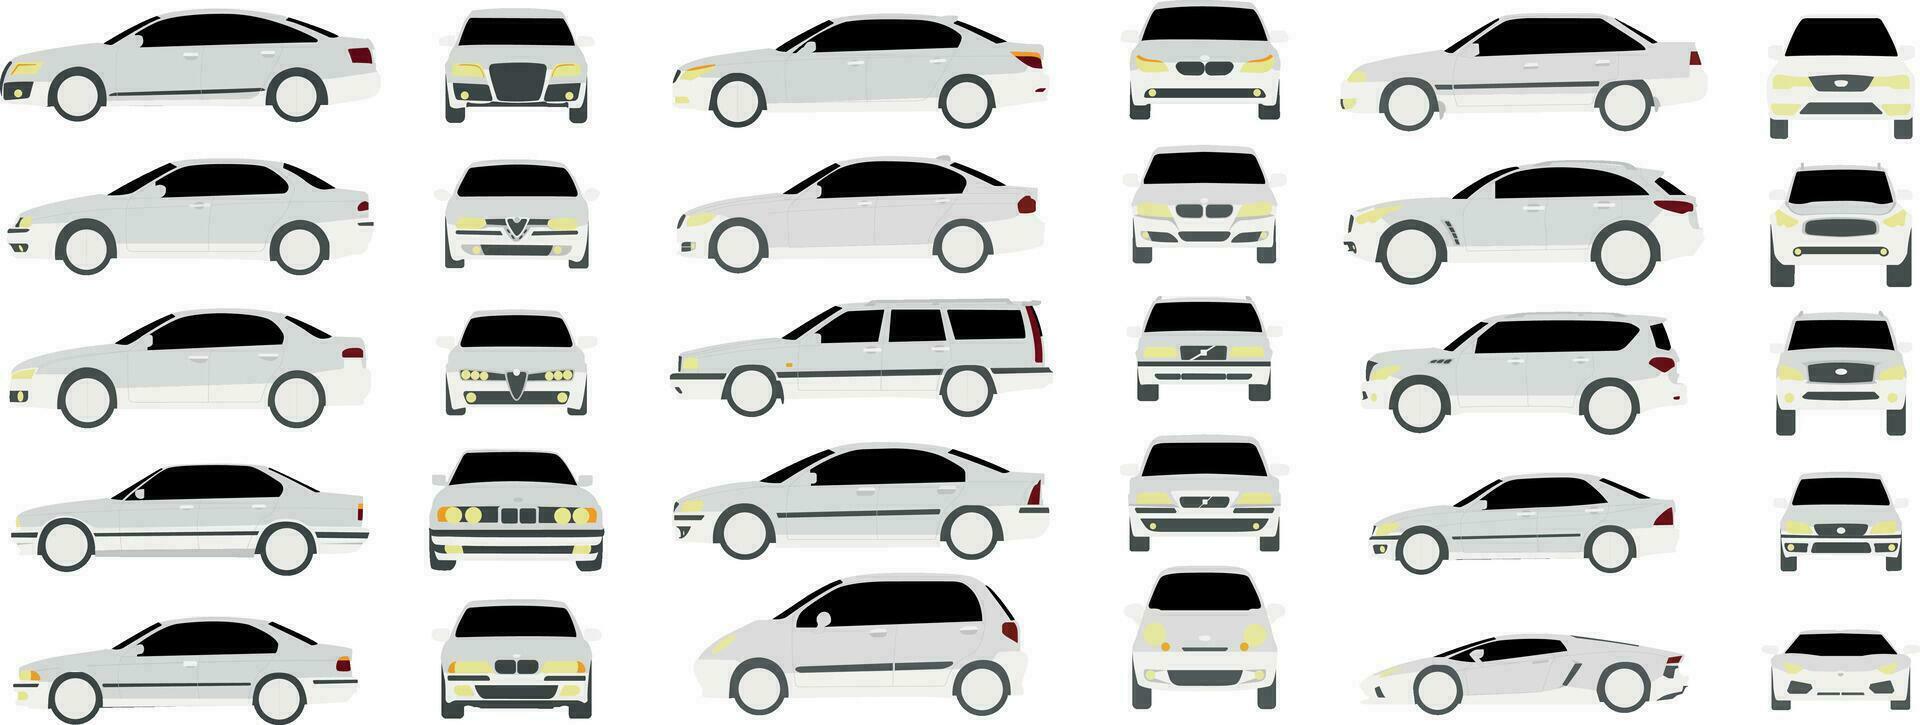 uppsättning av annorlunda främre och sida bilar i realistisk design isolerat på vit bakgrund vektor